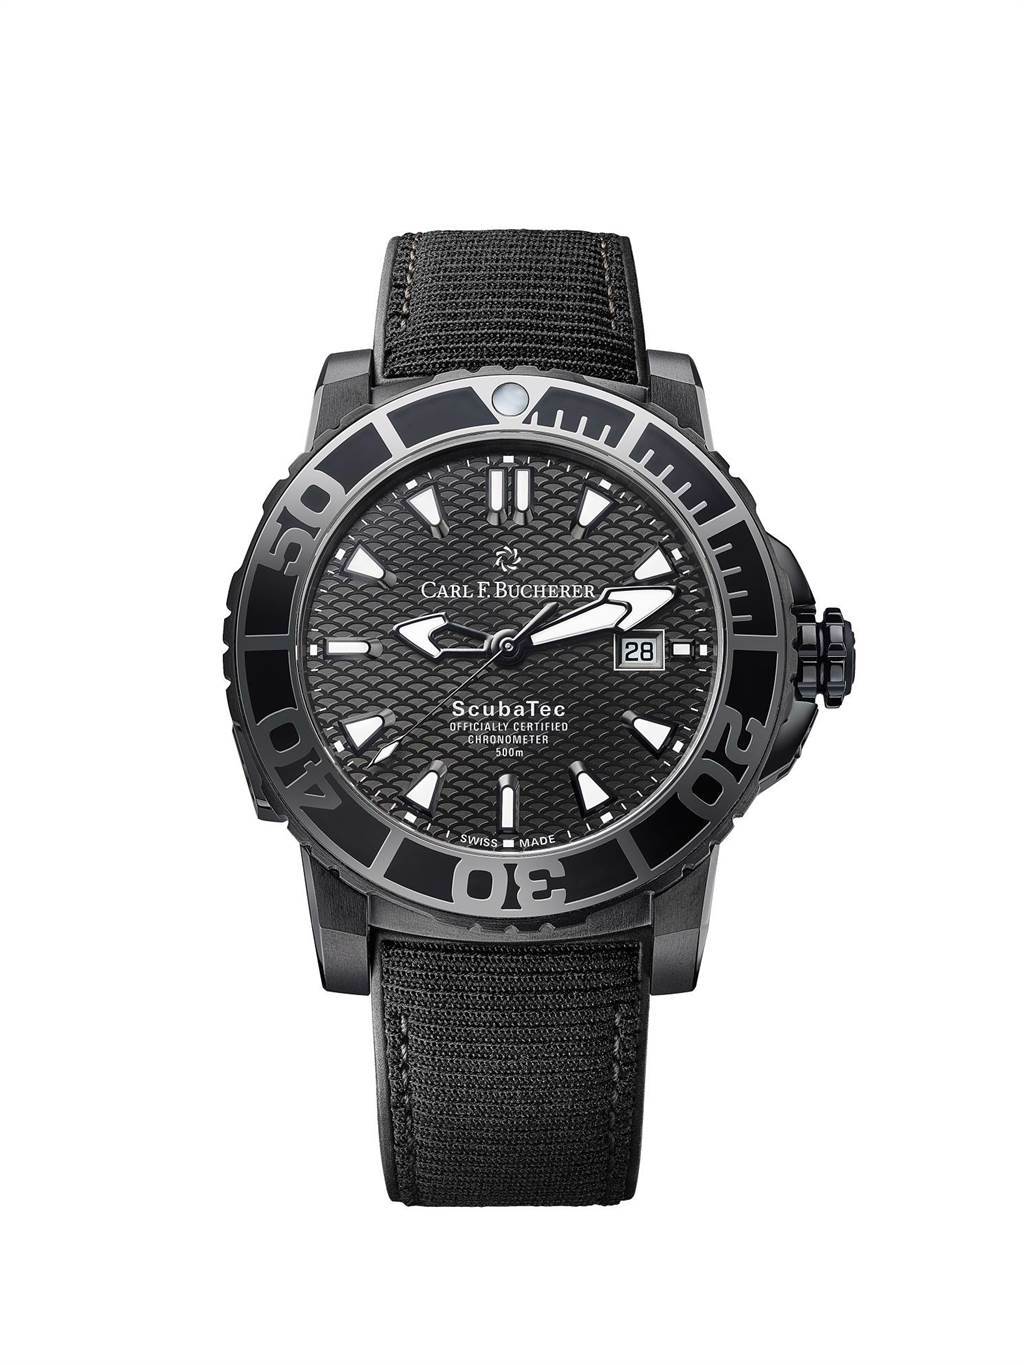 寶齊萊柏拉維深潛系列（Patravi ScubaTec）碳黑版腕表，橡膠表帶是以回收海洋廢棄保特瓶再製而成，25萬元。（Carl F.Bucherer 提供）